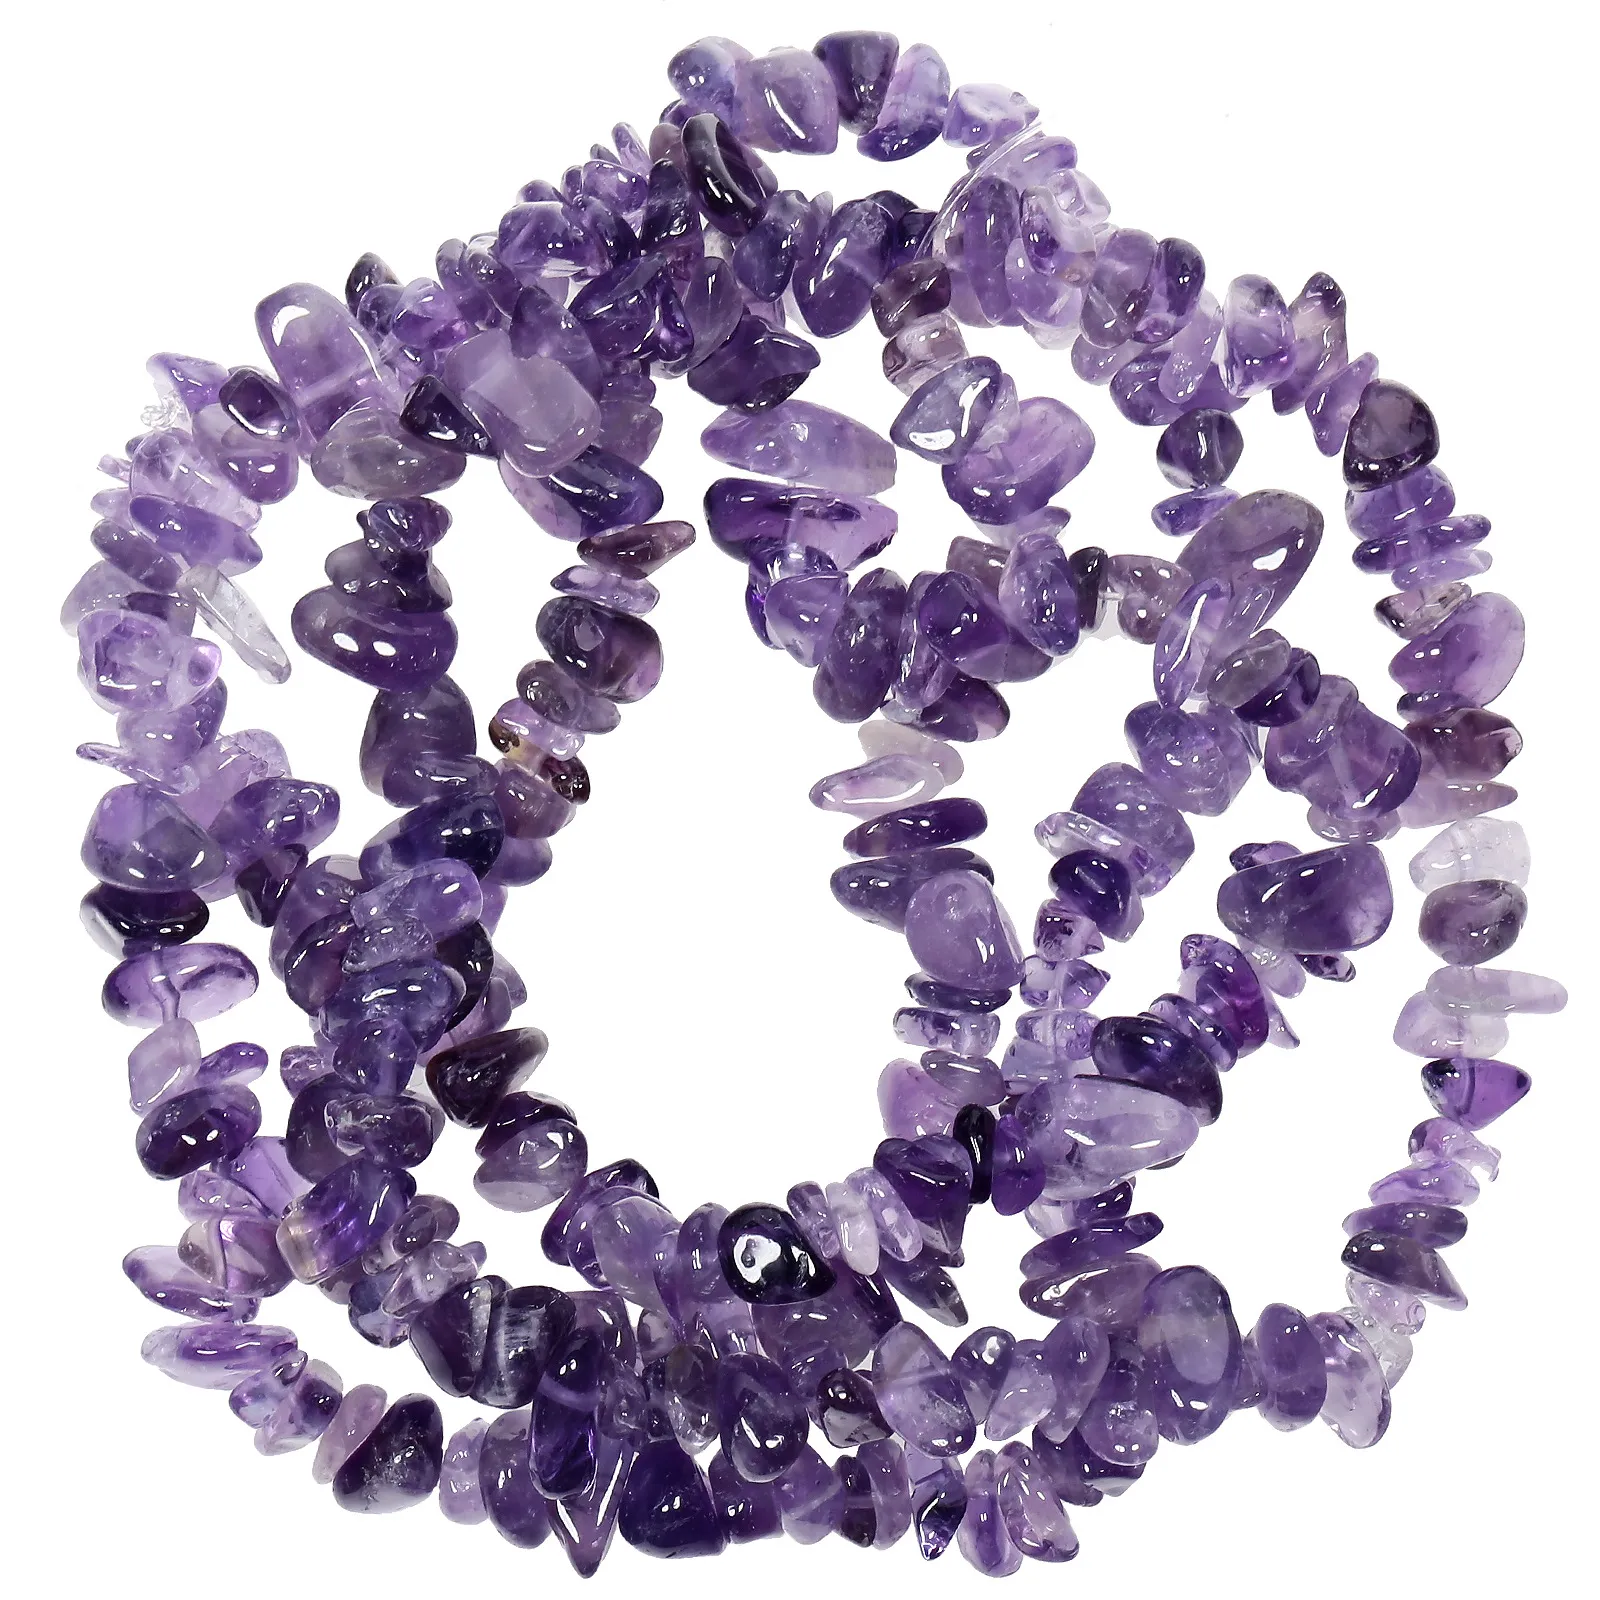 Chips naturales sueltos Beads de cristal para joyas que hacen polaco perforado